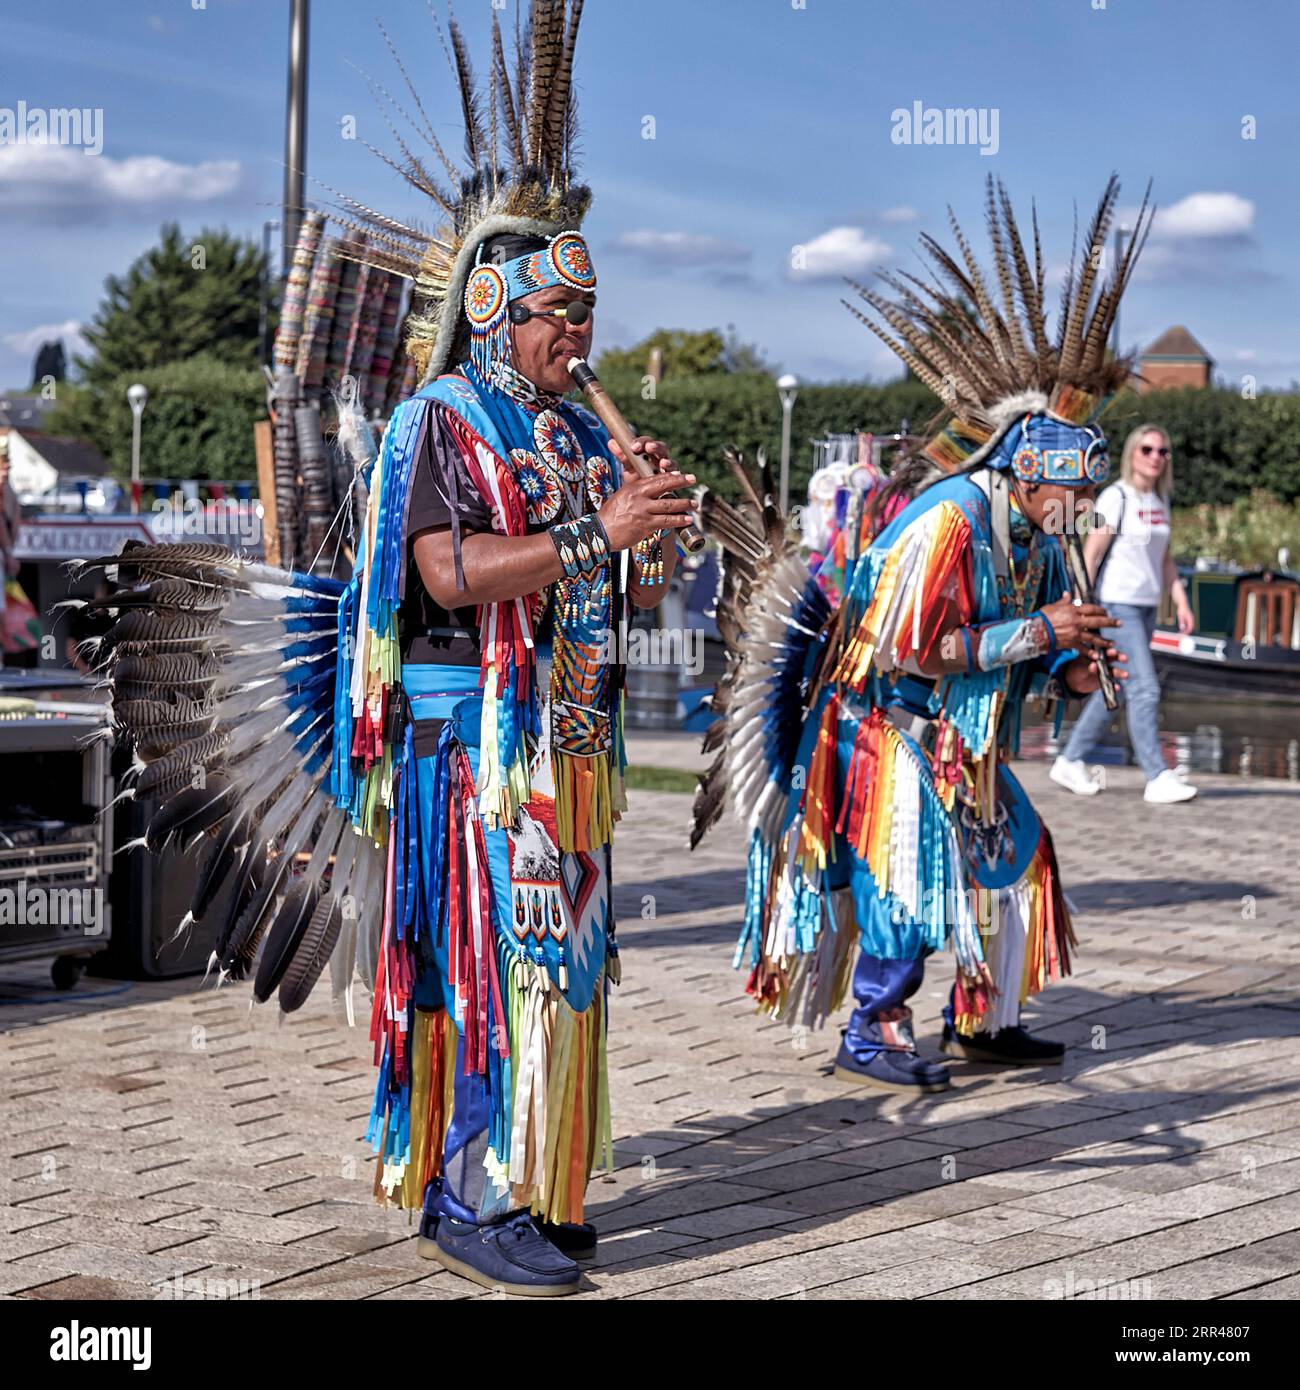 Costume tradizionale della gente della tribù Quichua dell'Ecuador durante uno spettacolo di danza a Stratford Upon Avon, Inghilterra, Regno Unito. Discendenti dell'Impero Inca Foto Stock